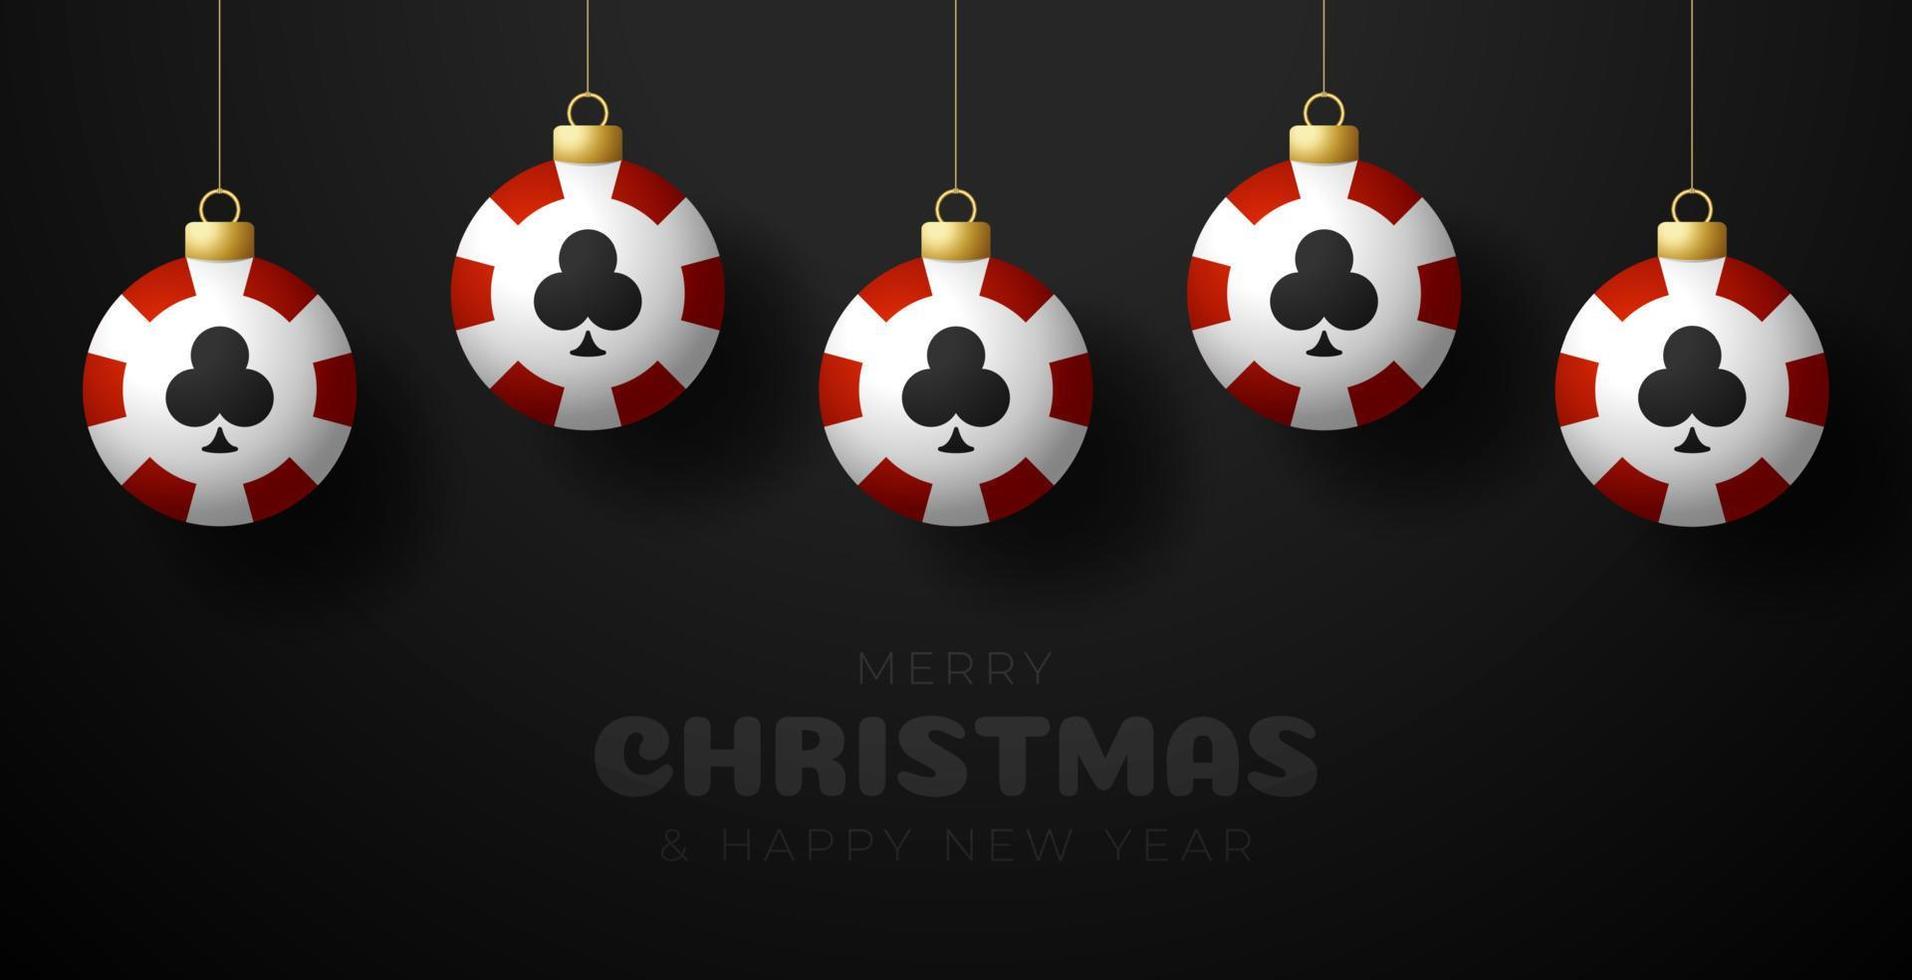 tarjeta de felicitación de navidad del casino. feliz navidad y próspero año nuevo colgar de un hilo de fichas de casino como una bola de navidad. Ilustración de vector de deporte.